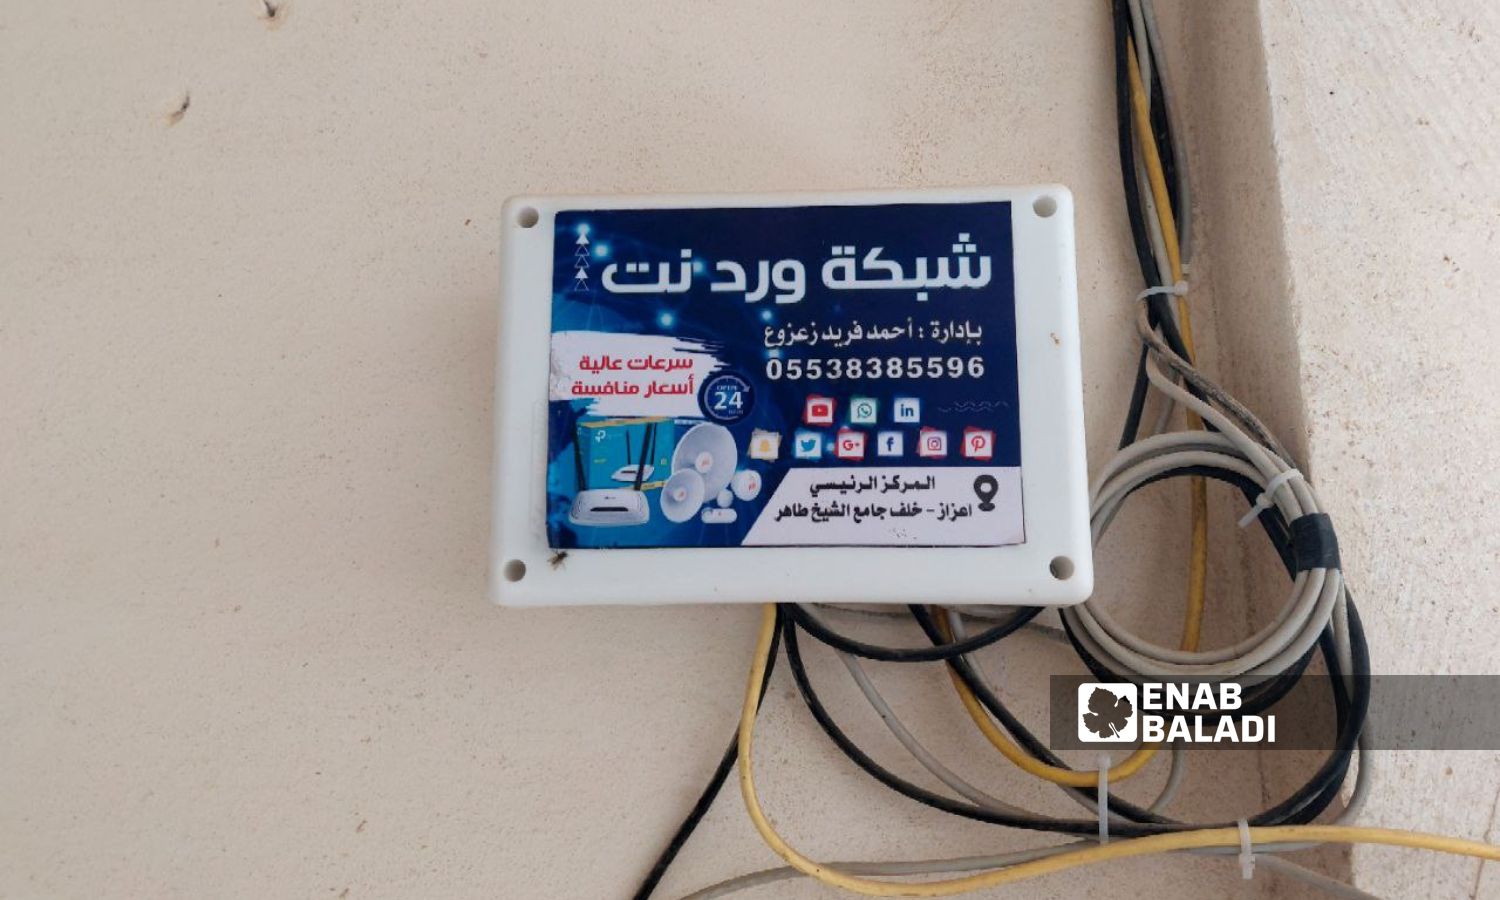 "مودم" جهاز استقبال وتوزيع شبكة إنترنت لمنزل في مدينة اعزاز شمالي حلب - 8 من كانون الأول 2023 (عنب بلدي/ ديان جنباز)